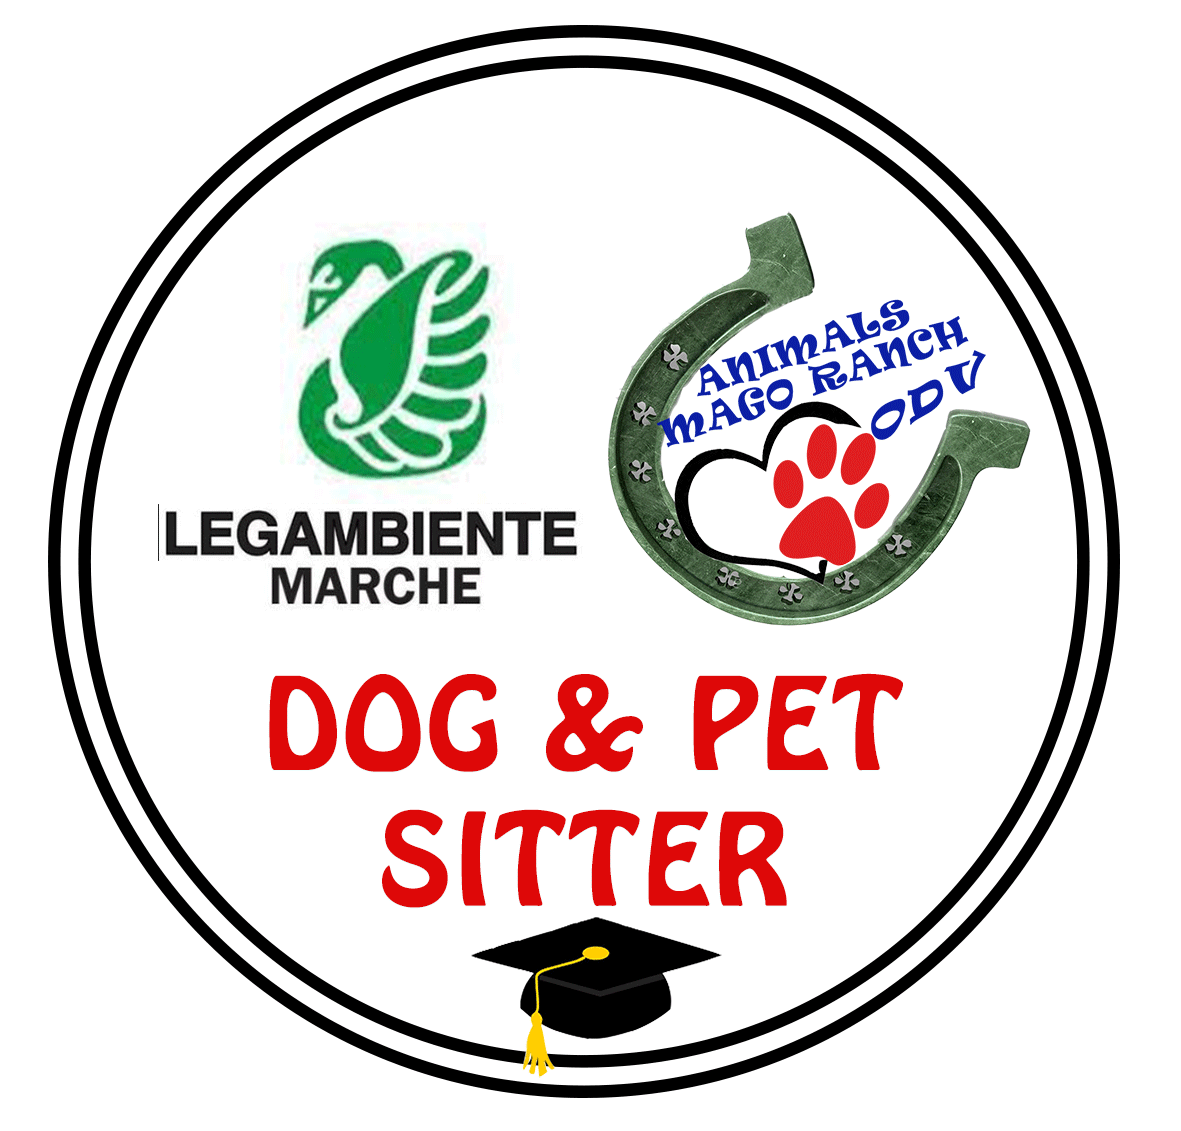 Corso formazione Dog e Pet Sitter in collaborazione con Legambiente Marche